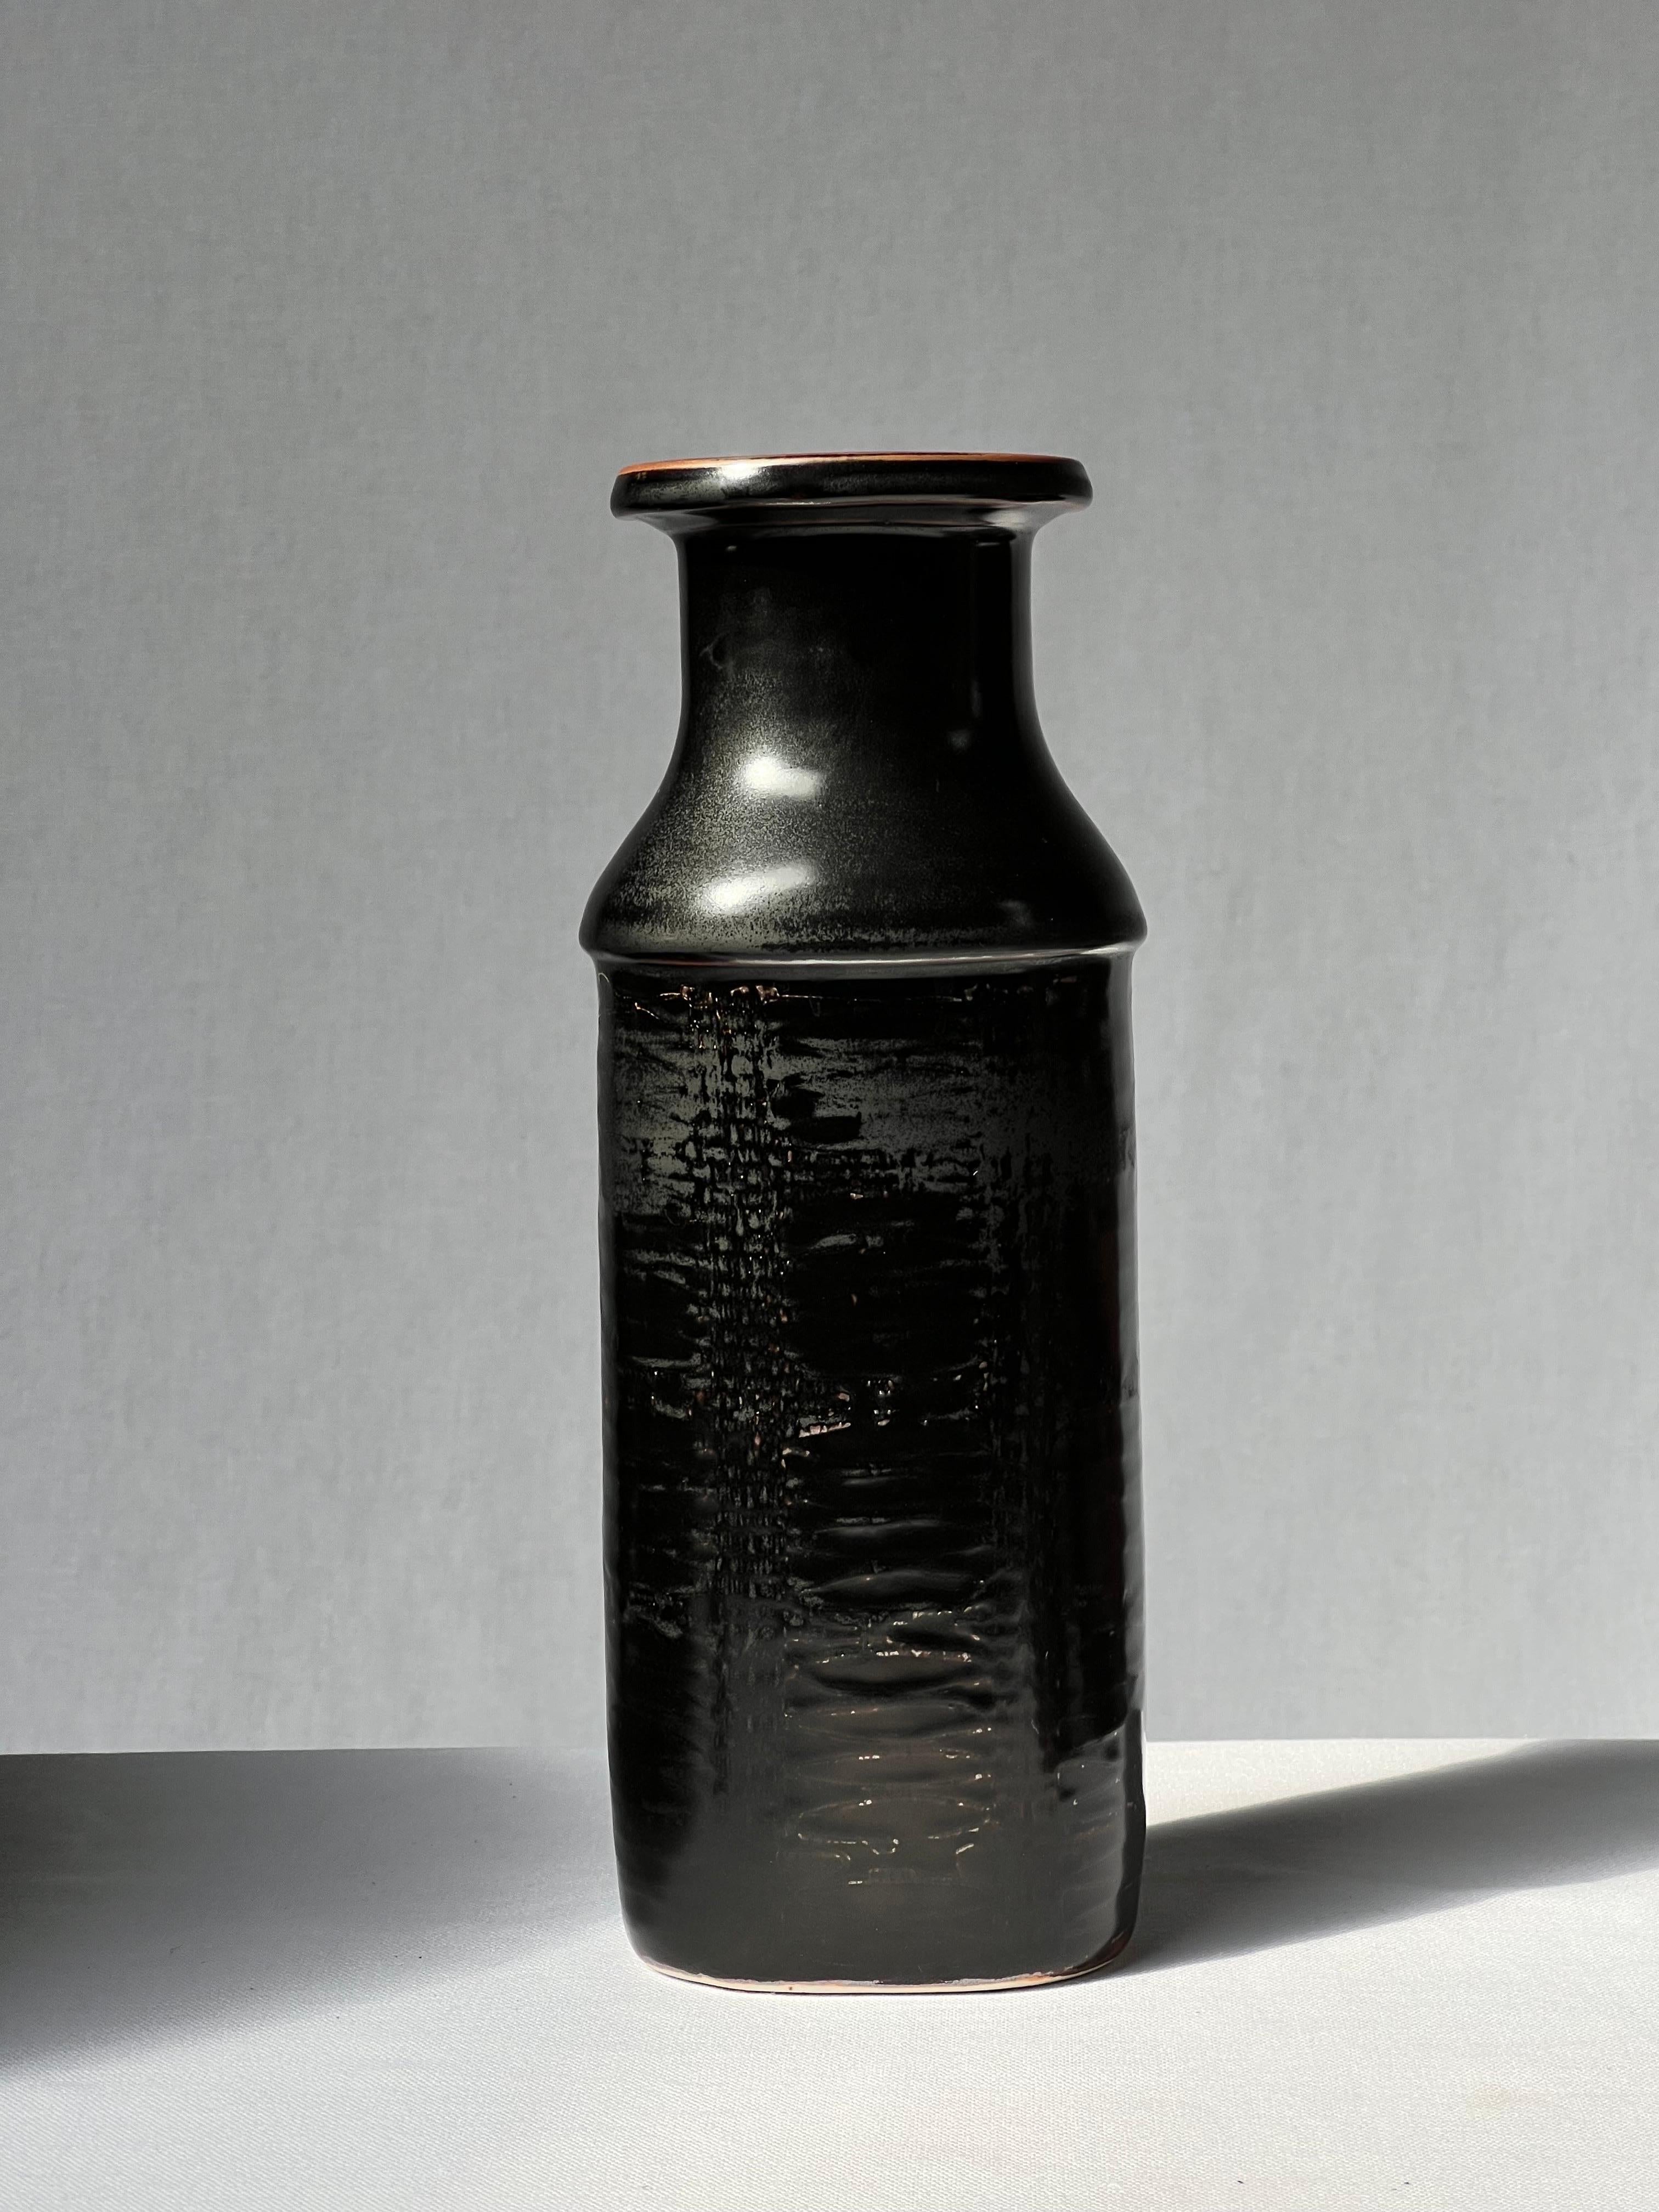 Stig Lindberg Unique Vase in black Glaze Tenmoku Made by Hand Sweden 1978 For Sale 1